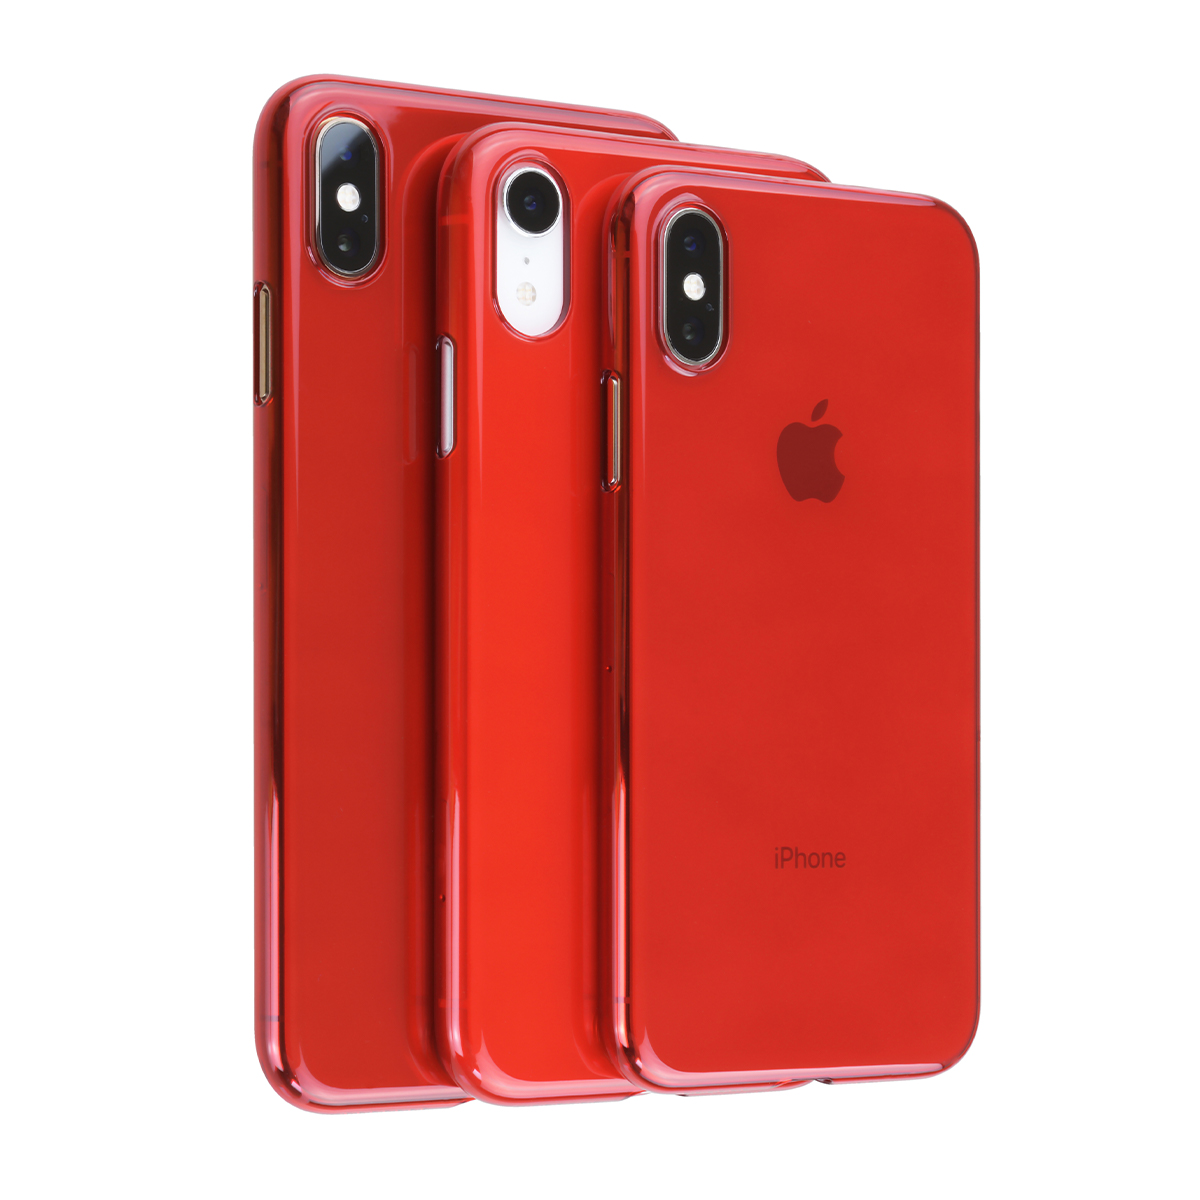 楽天市場 公式 パワーサポート エアージャケット クリアレッド Iphone Xs ケース 赤 Red パワーサポート 公式